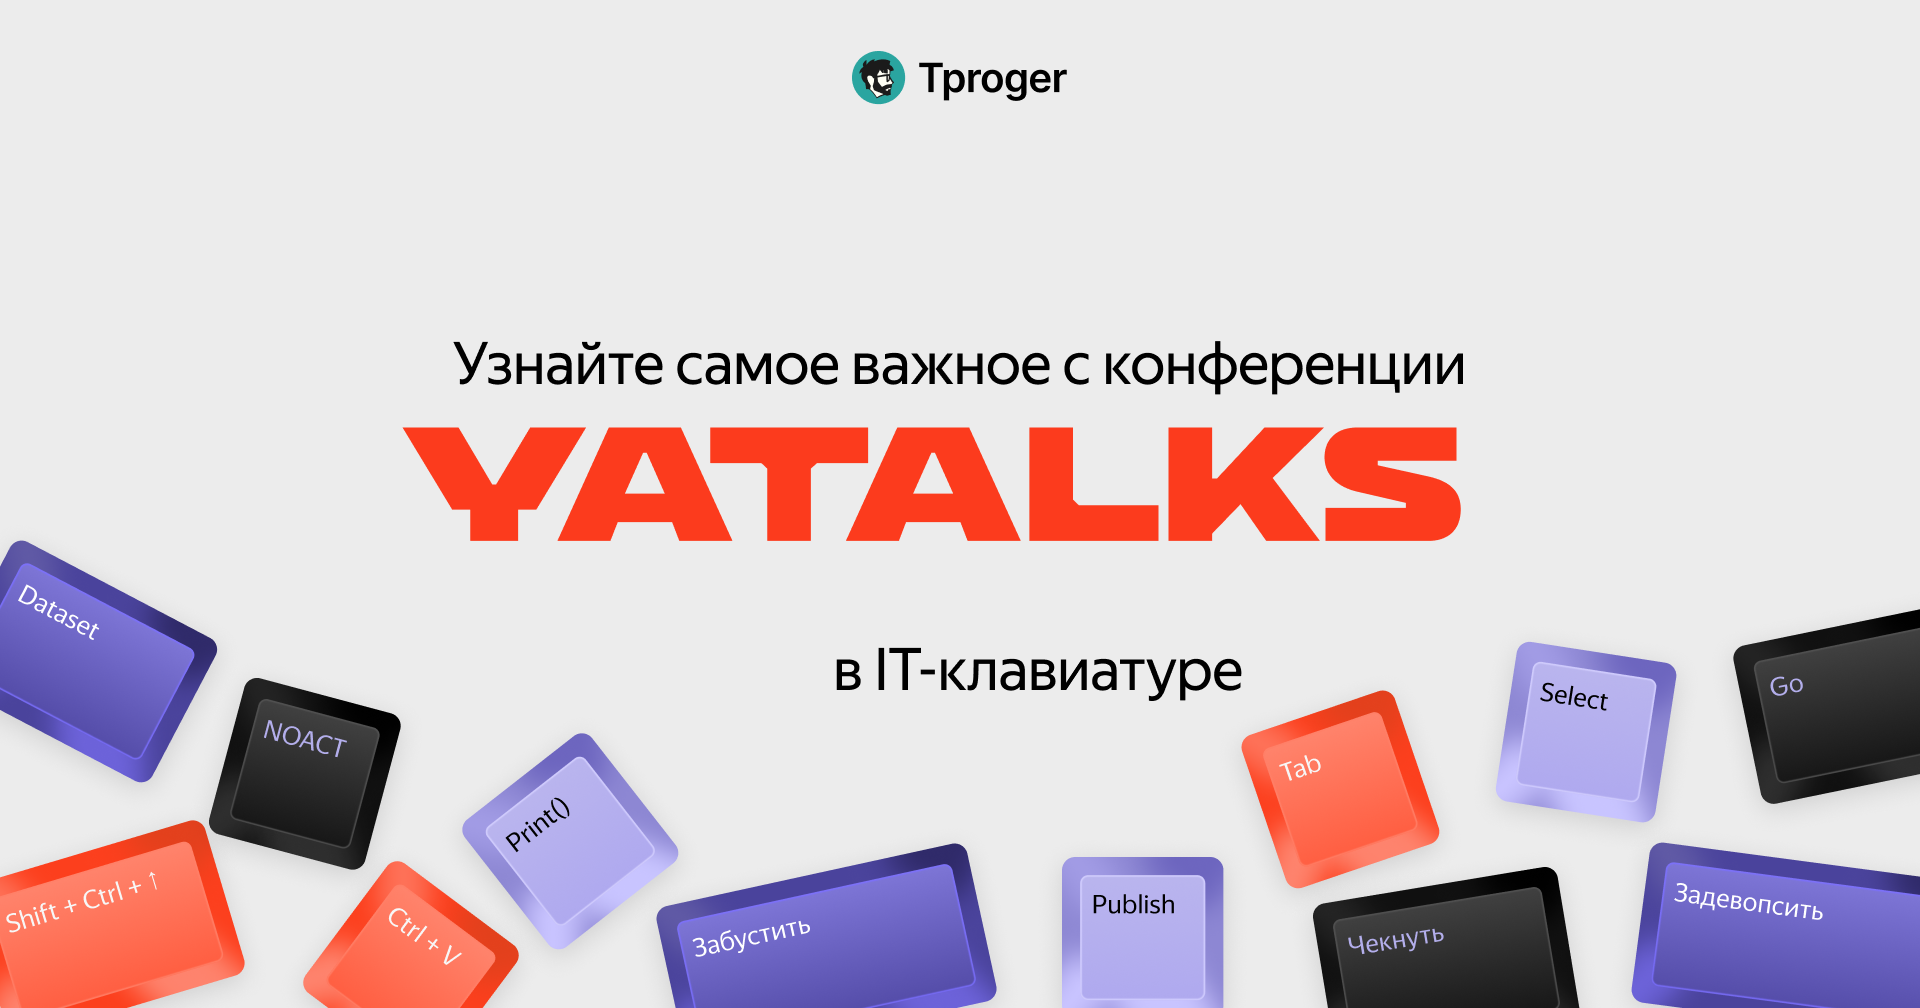 Обложка поста IT-клавиатура важных смыслов с конференции Yatalks